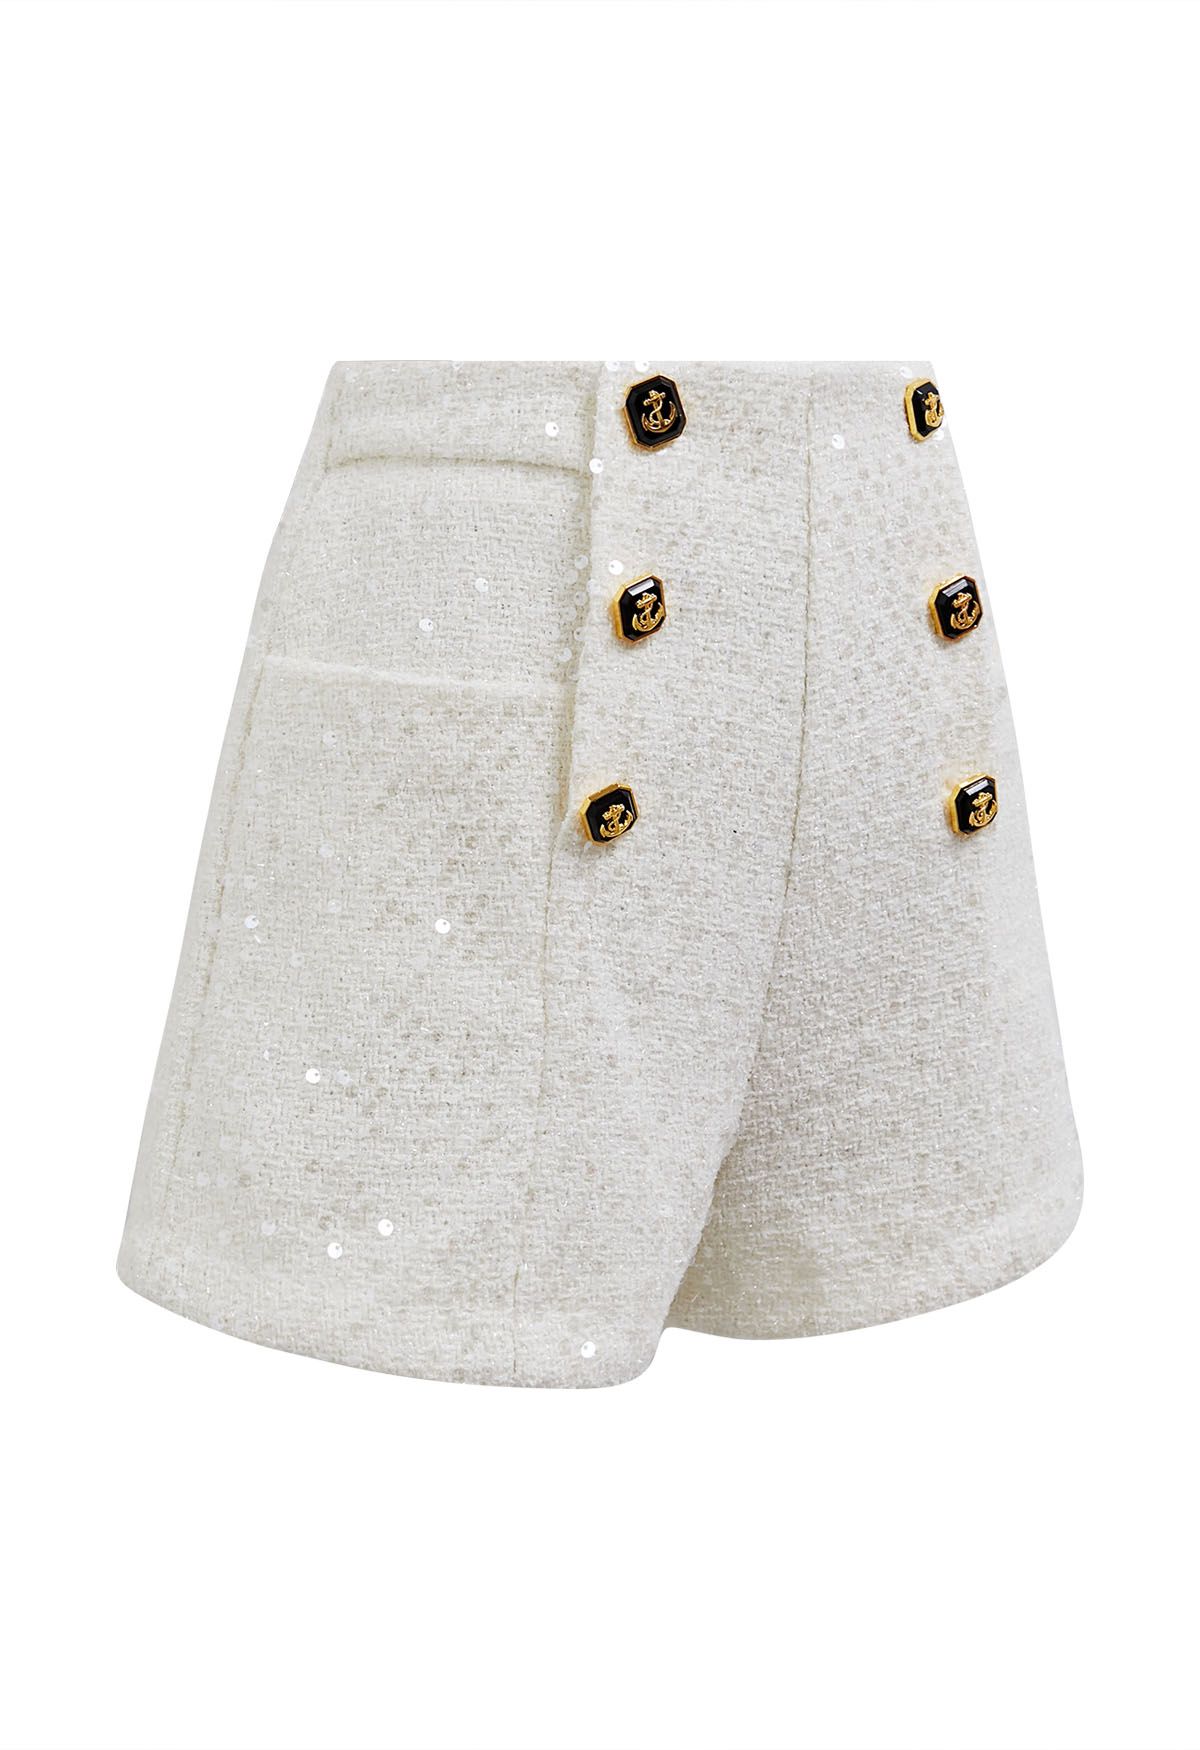 Shorts de tweed con lentejuelas y botones decorados en blanco